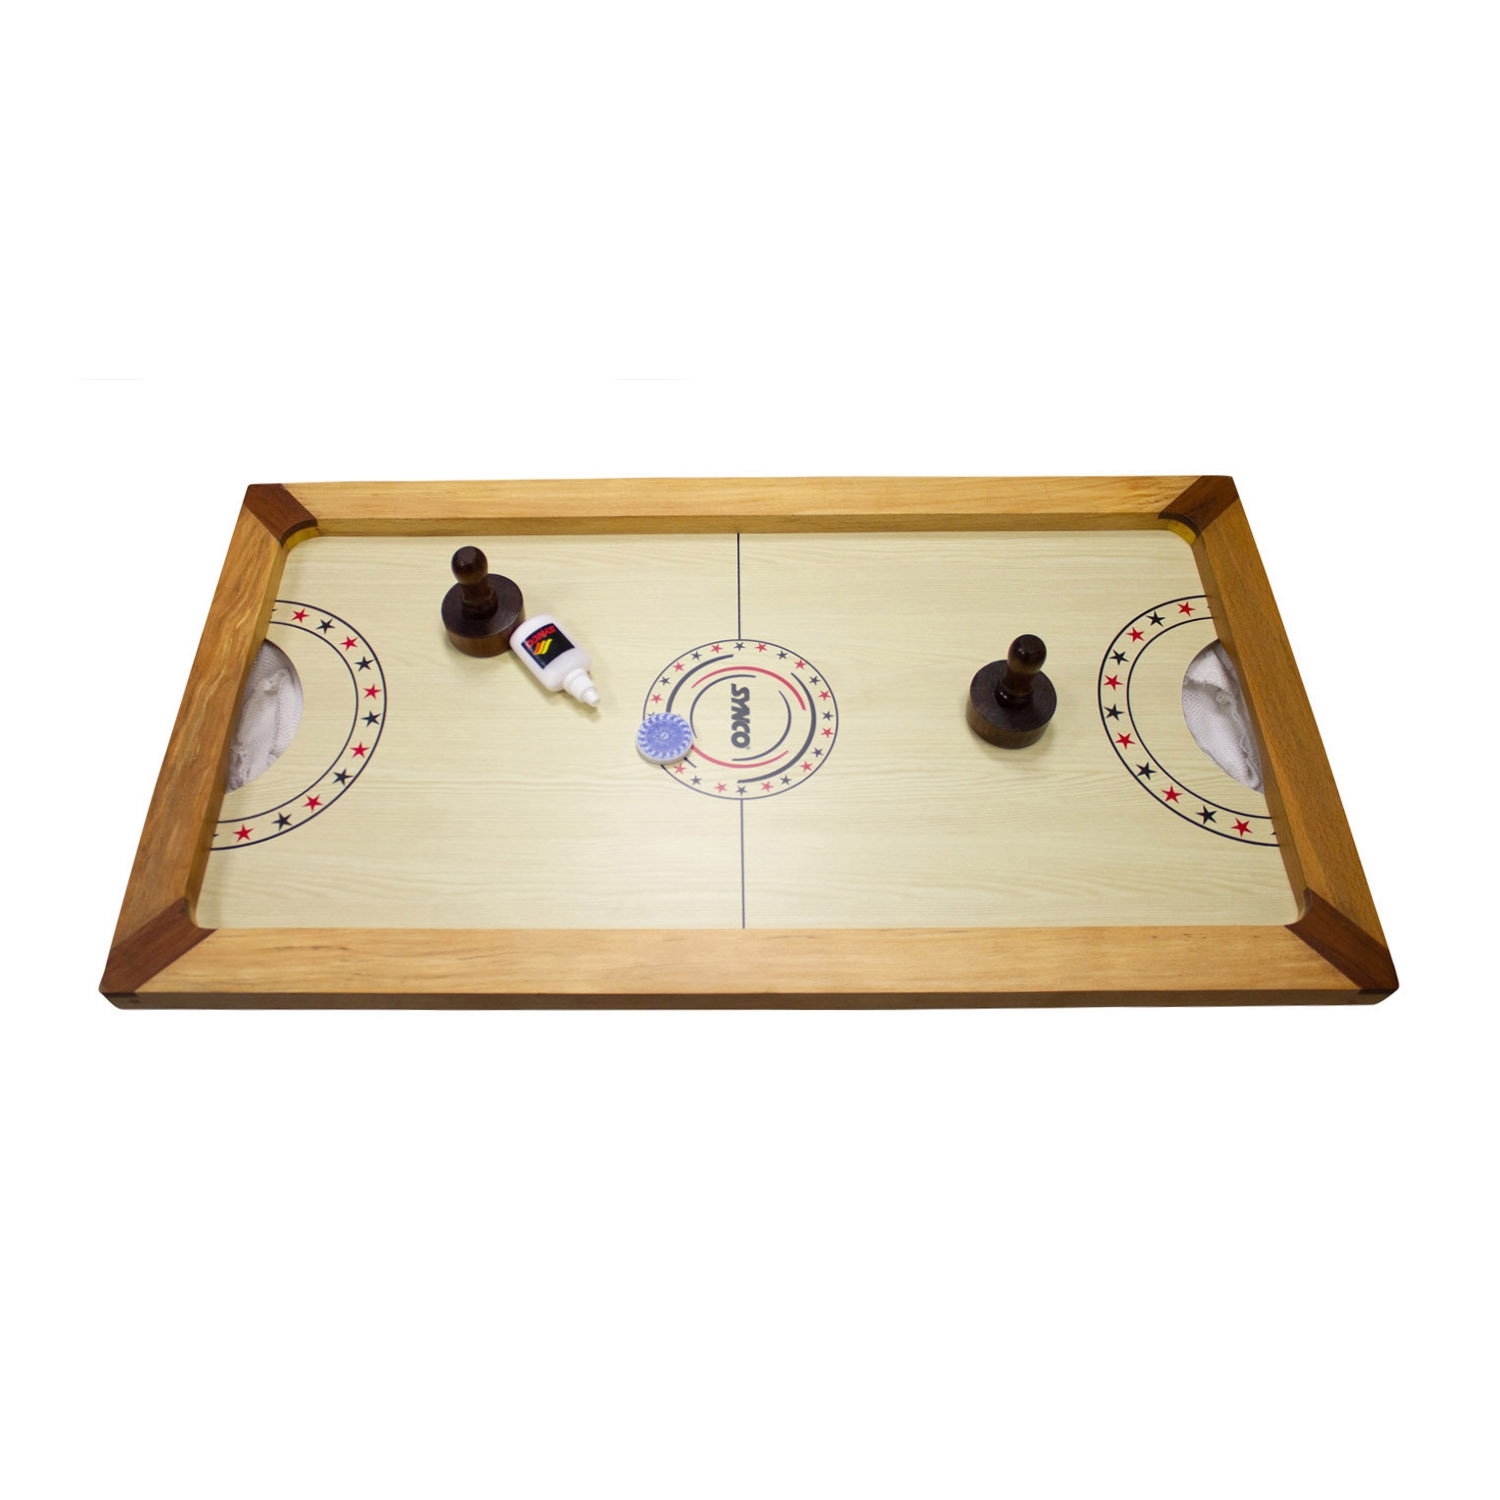 Airhockey Tischhockey Shuffle Puck Spiel aus Holz mit komplettem Zubehör und Gleitpulver - 2910